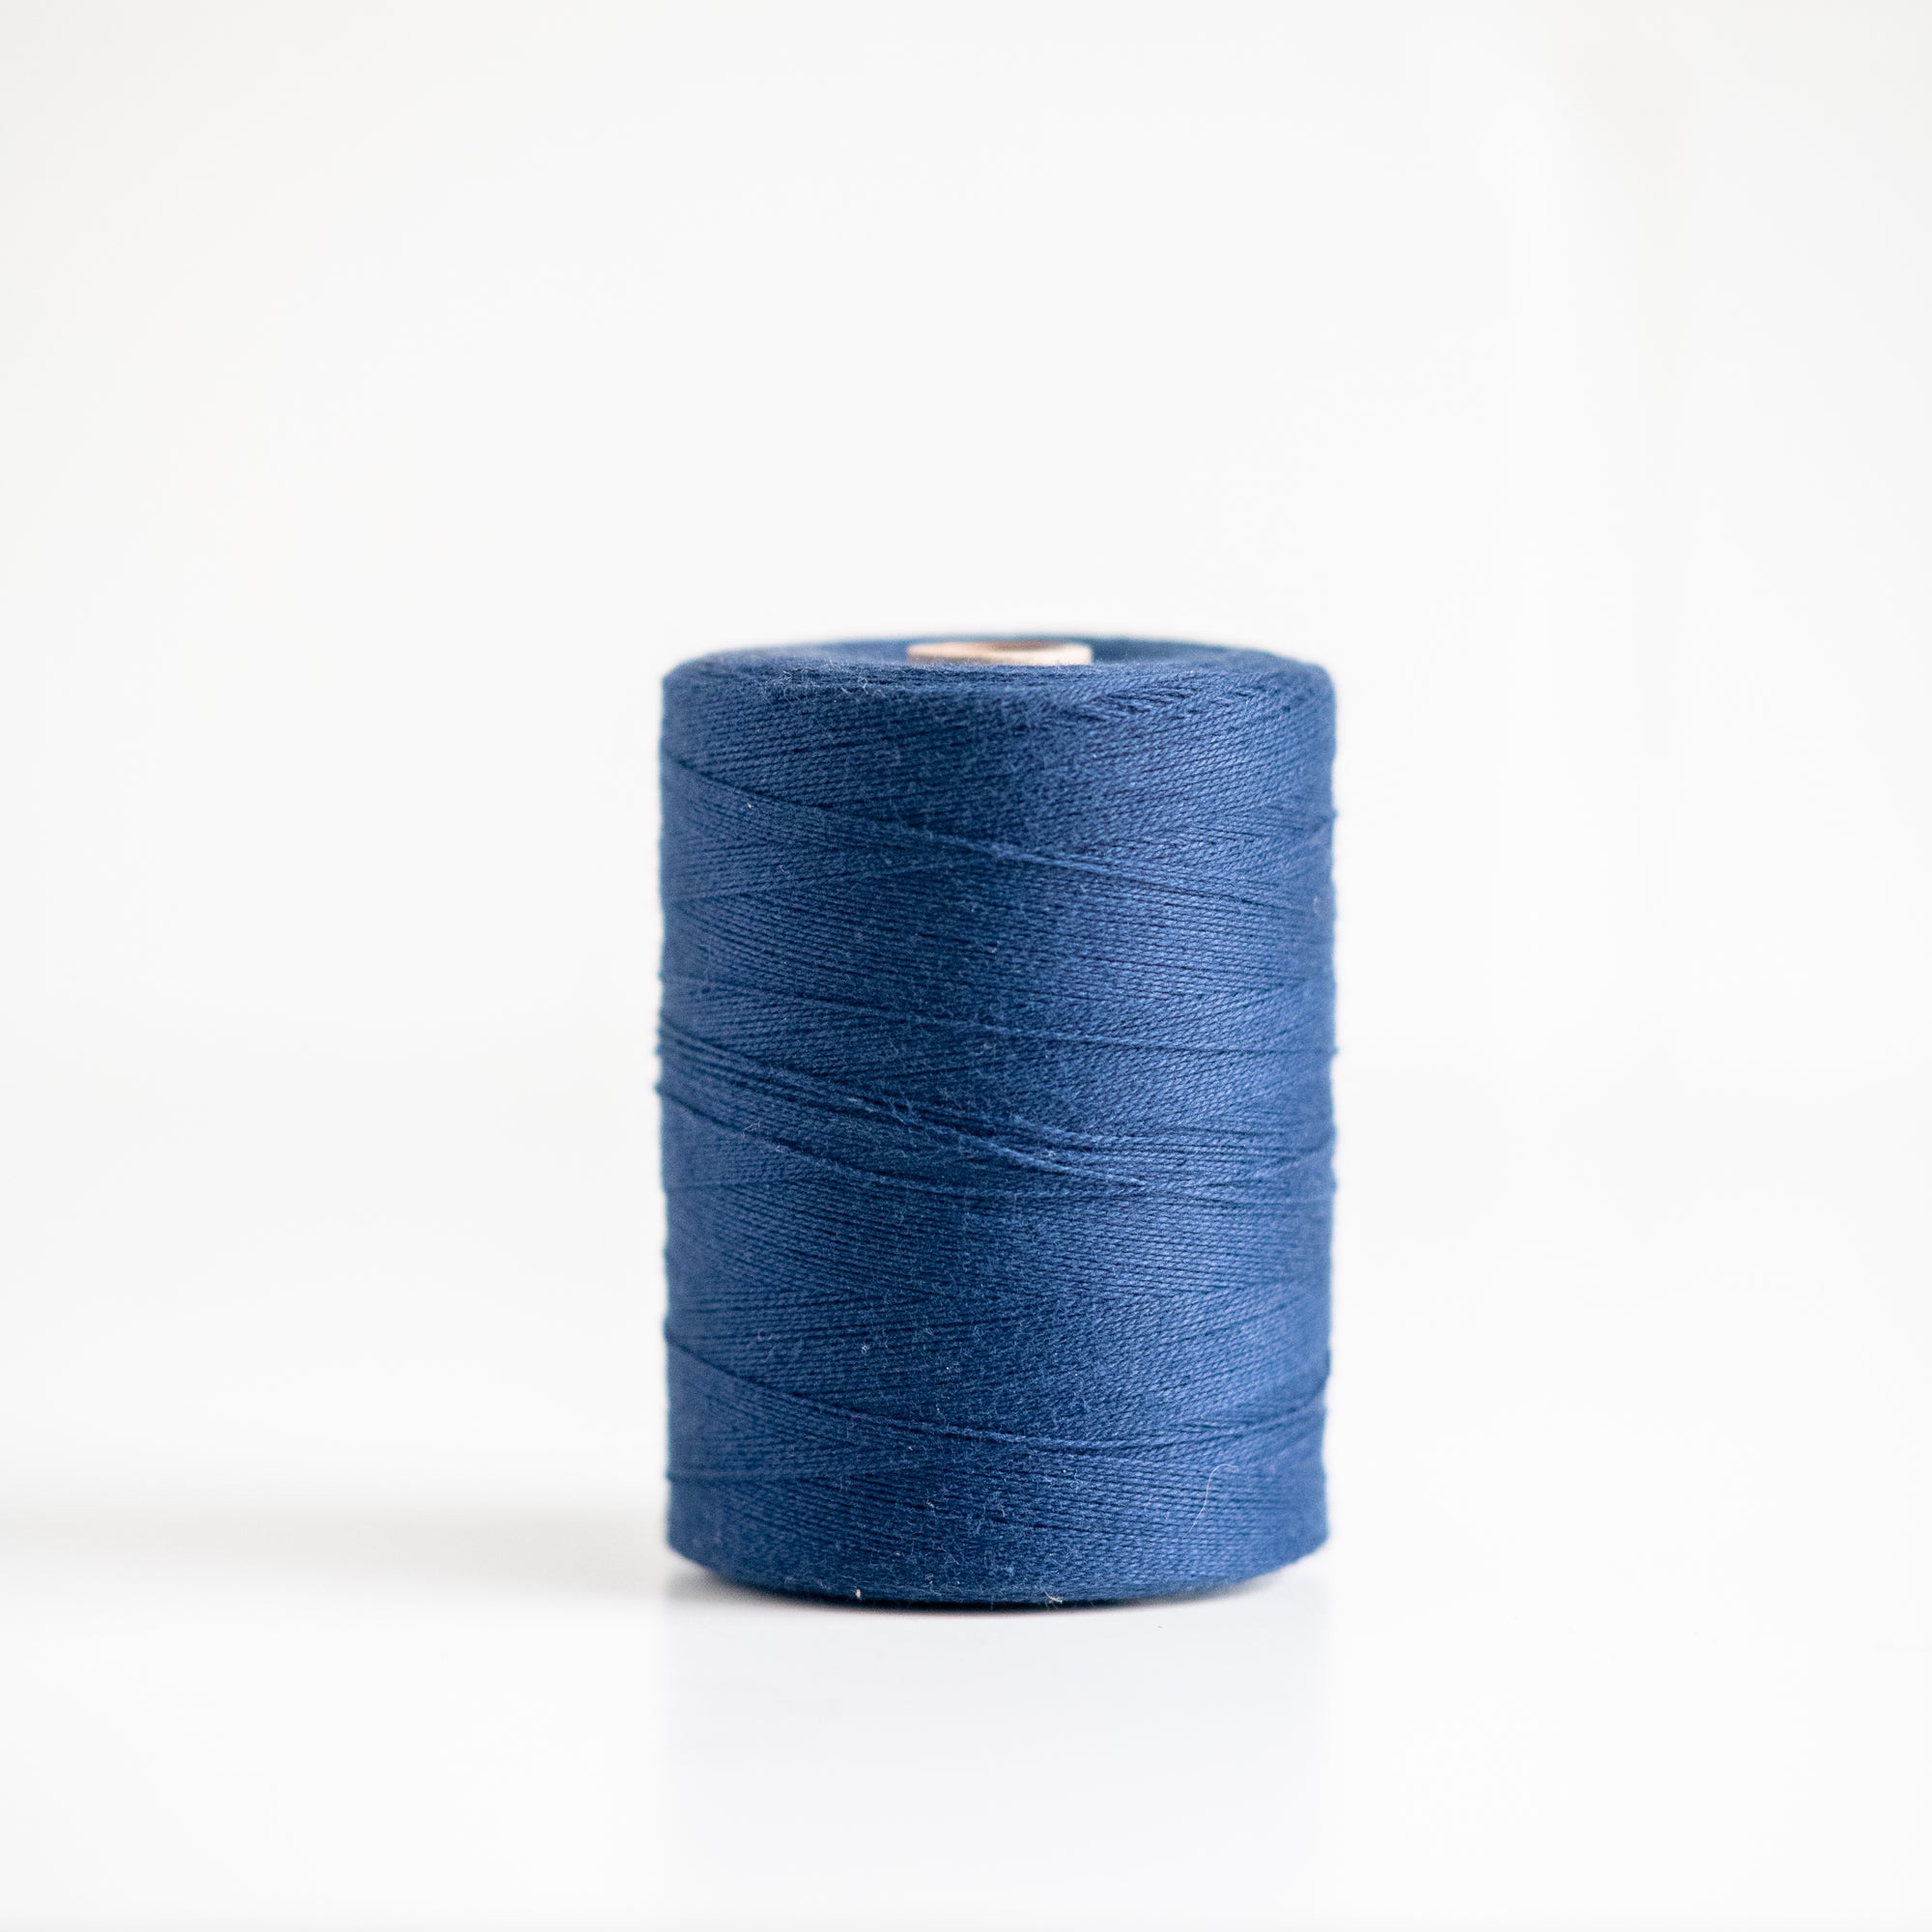 4/8 Cotton - Maurice Brassard - GATHER Textiles Inc.